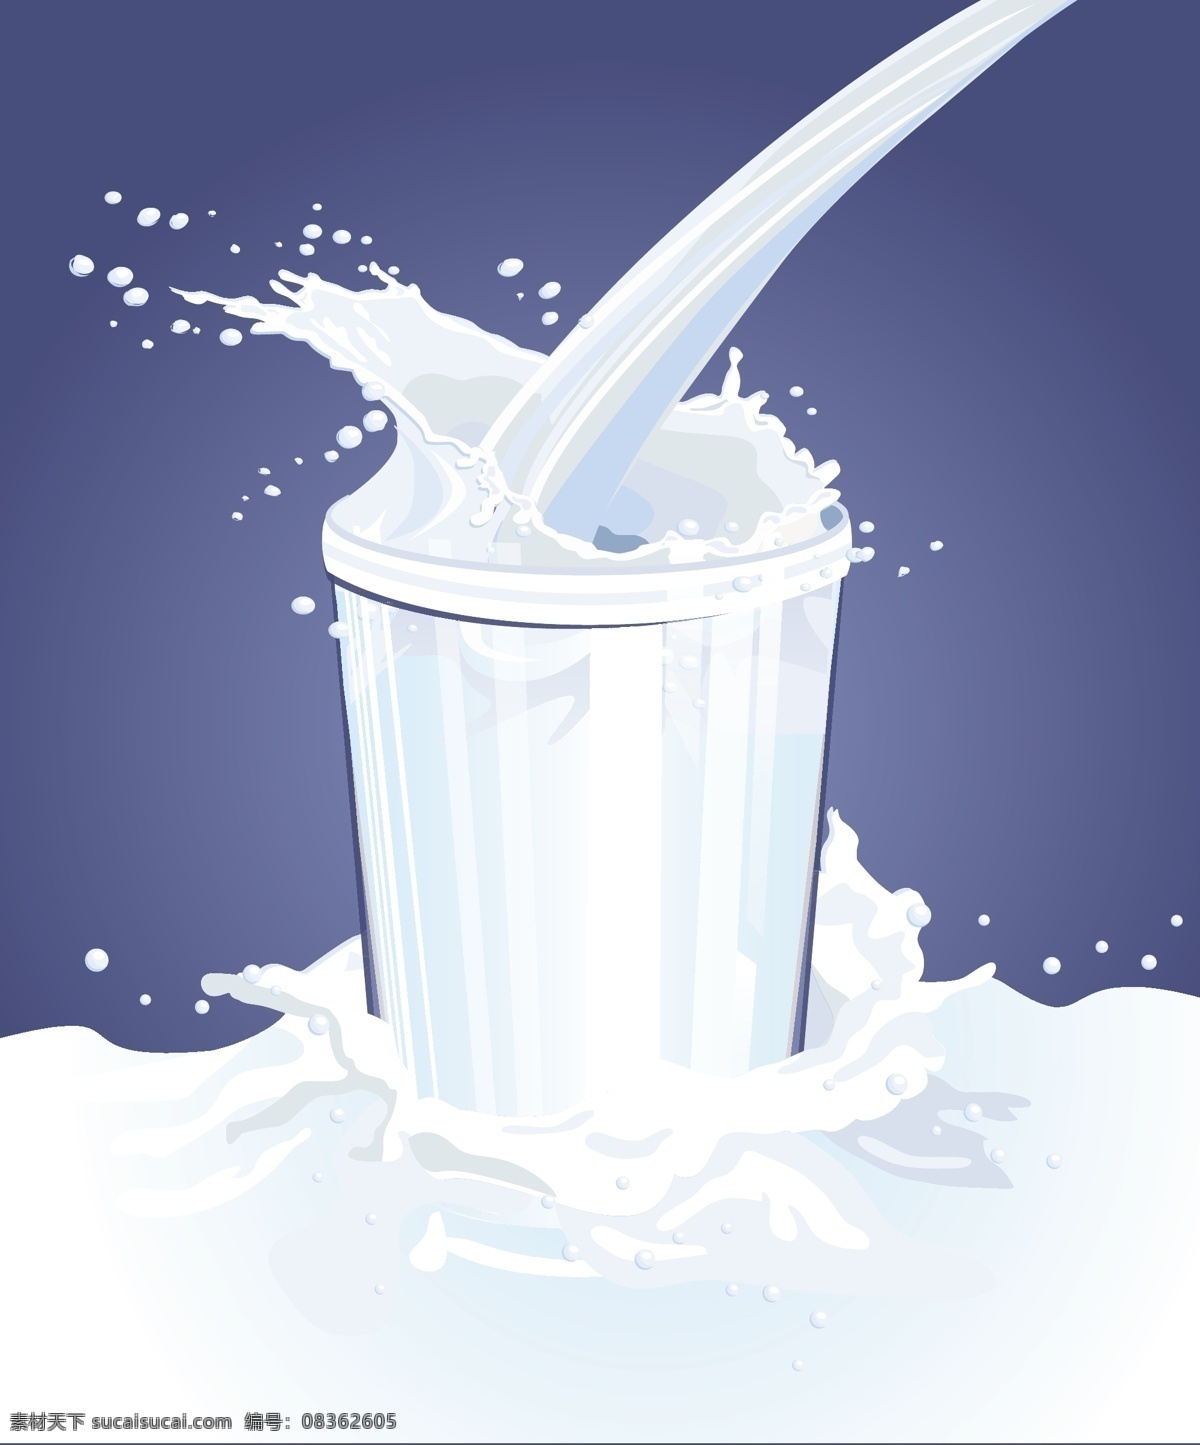 杯子与奶花 杯子 奶花 牛奶 饮料 食物 生活百科 矢量素材 白色